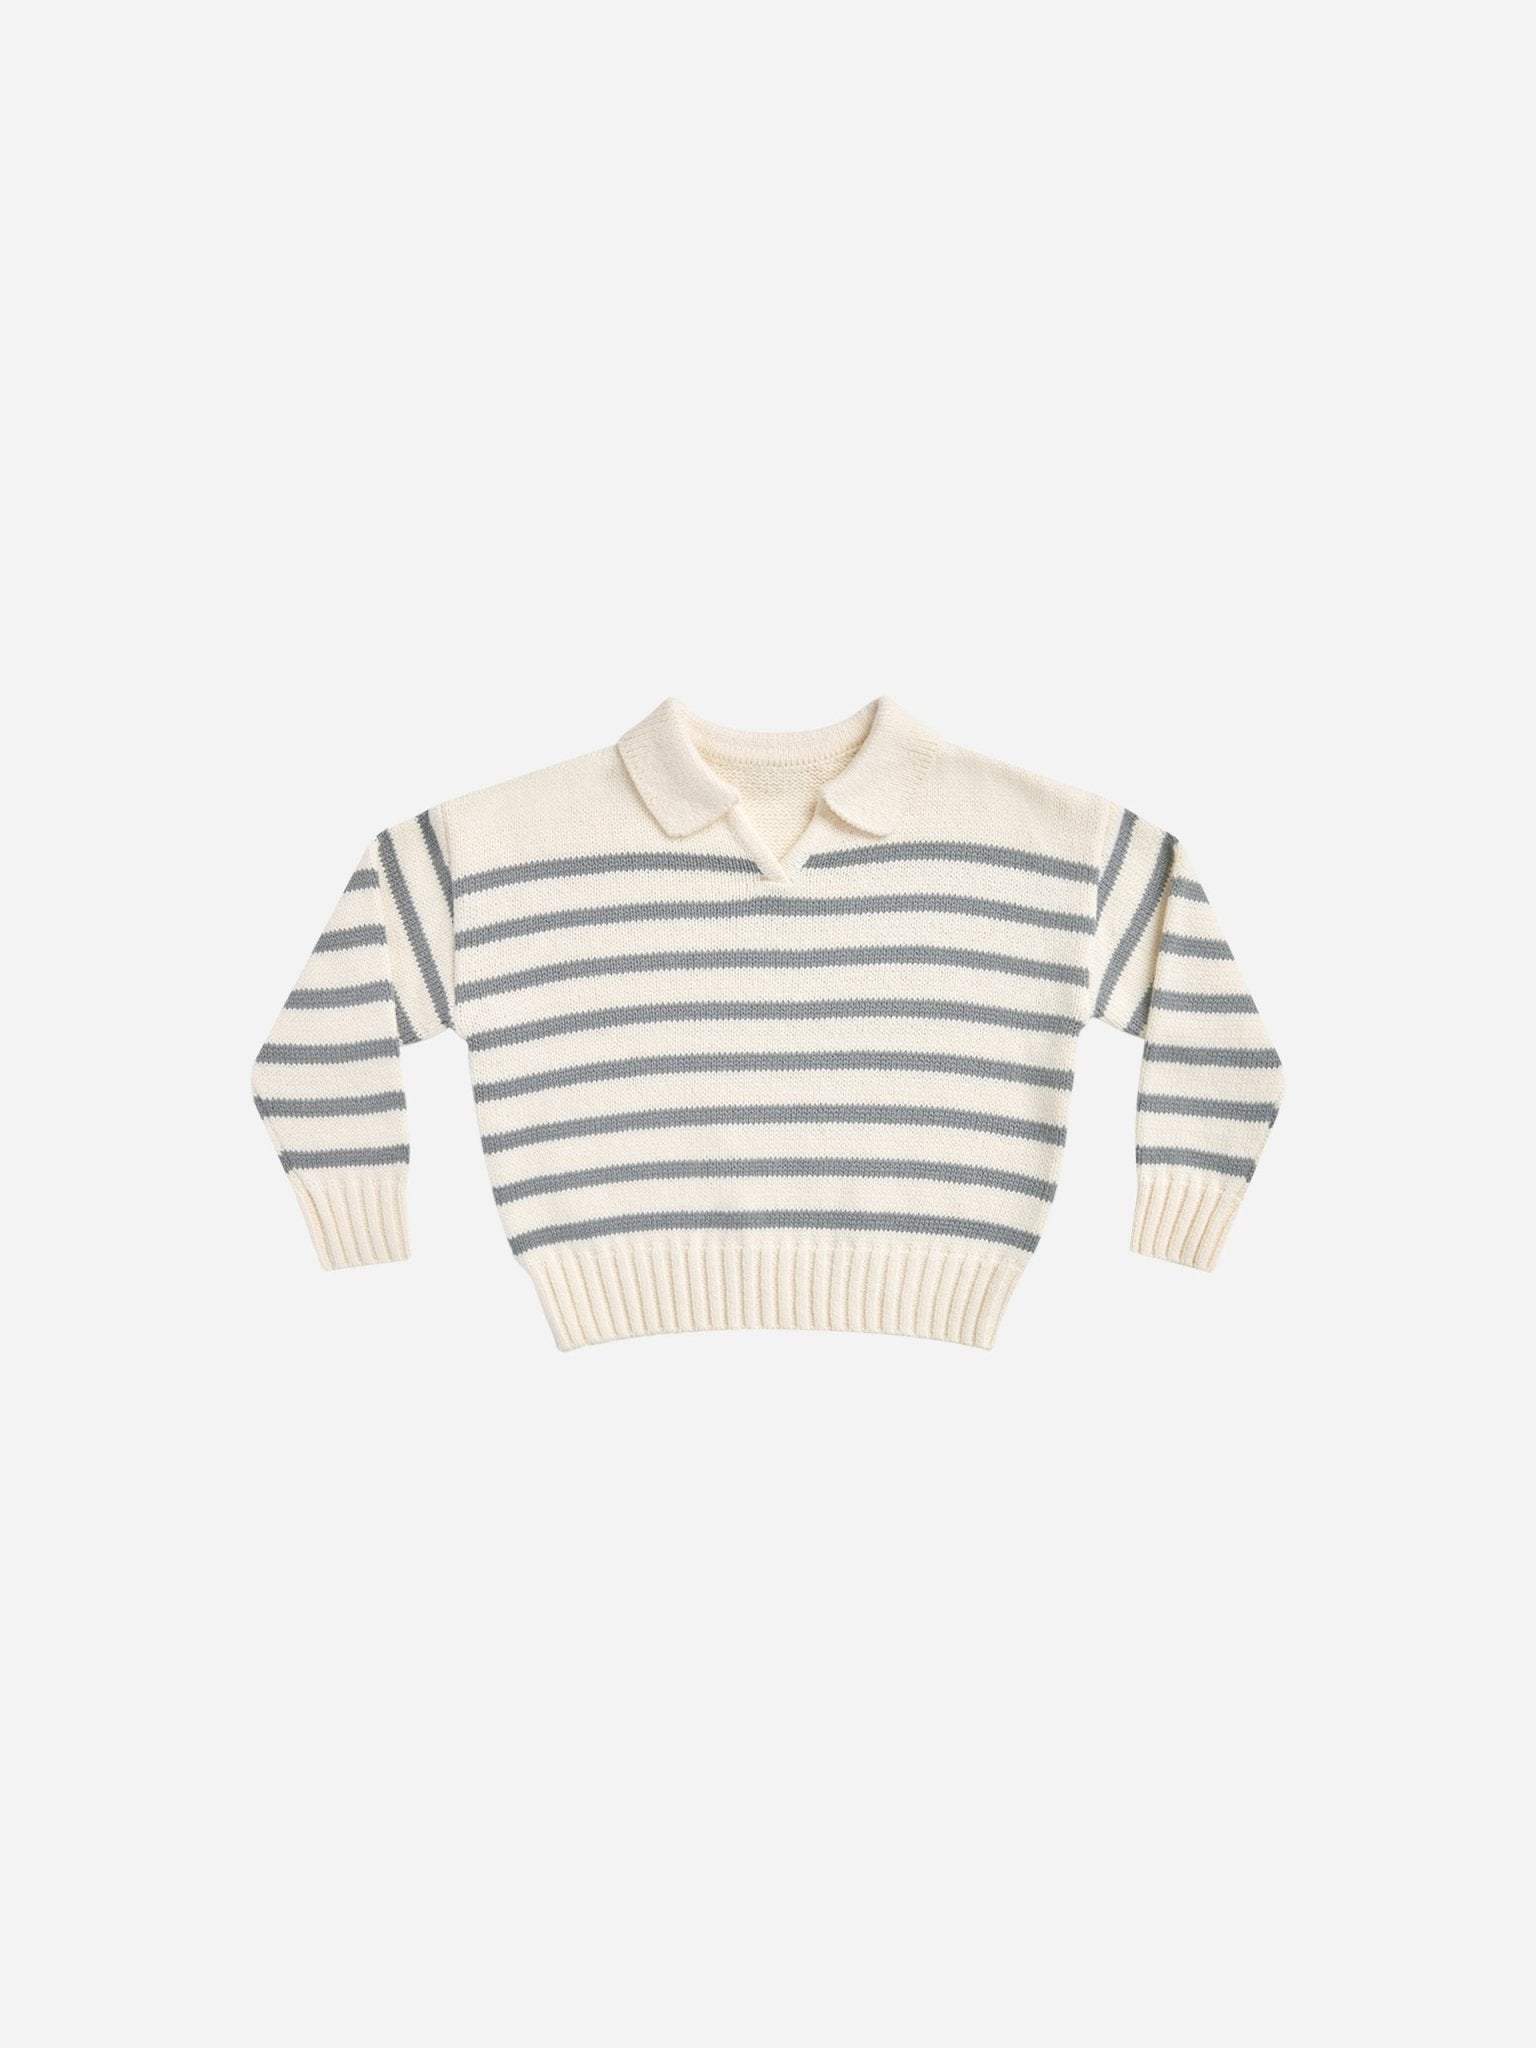 Collared Sweater || Stripe - Rylee + Cru Canada